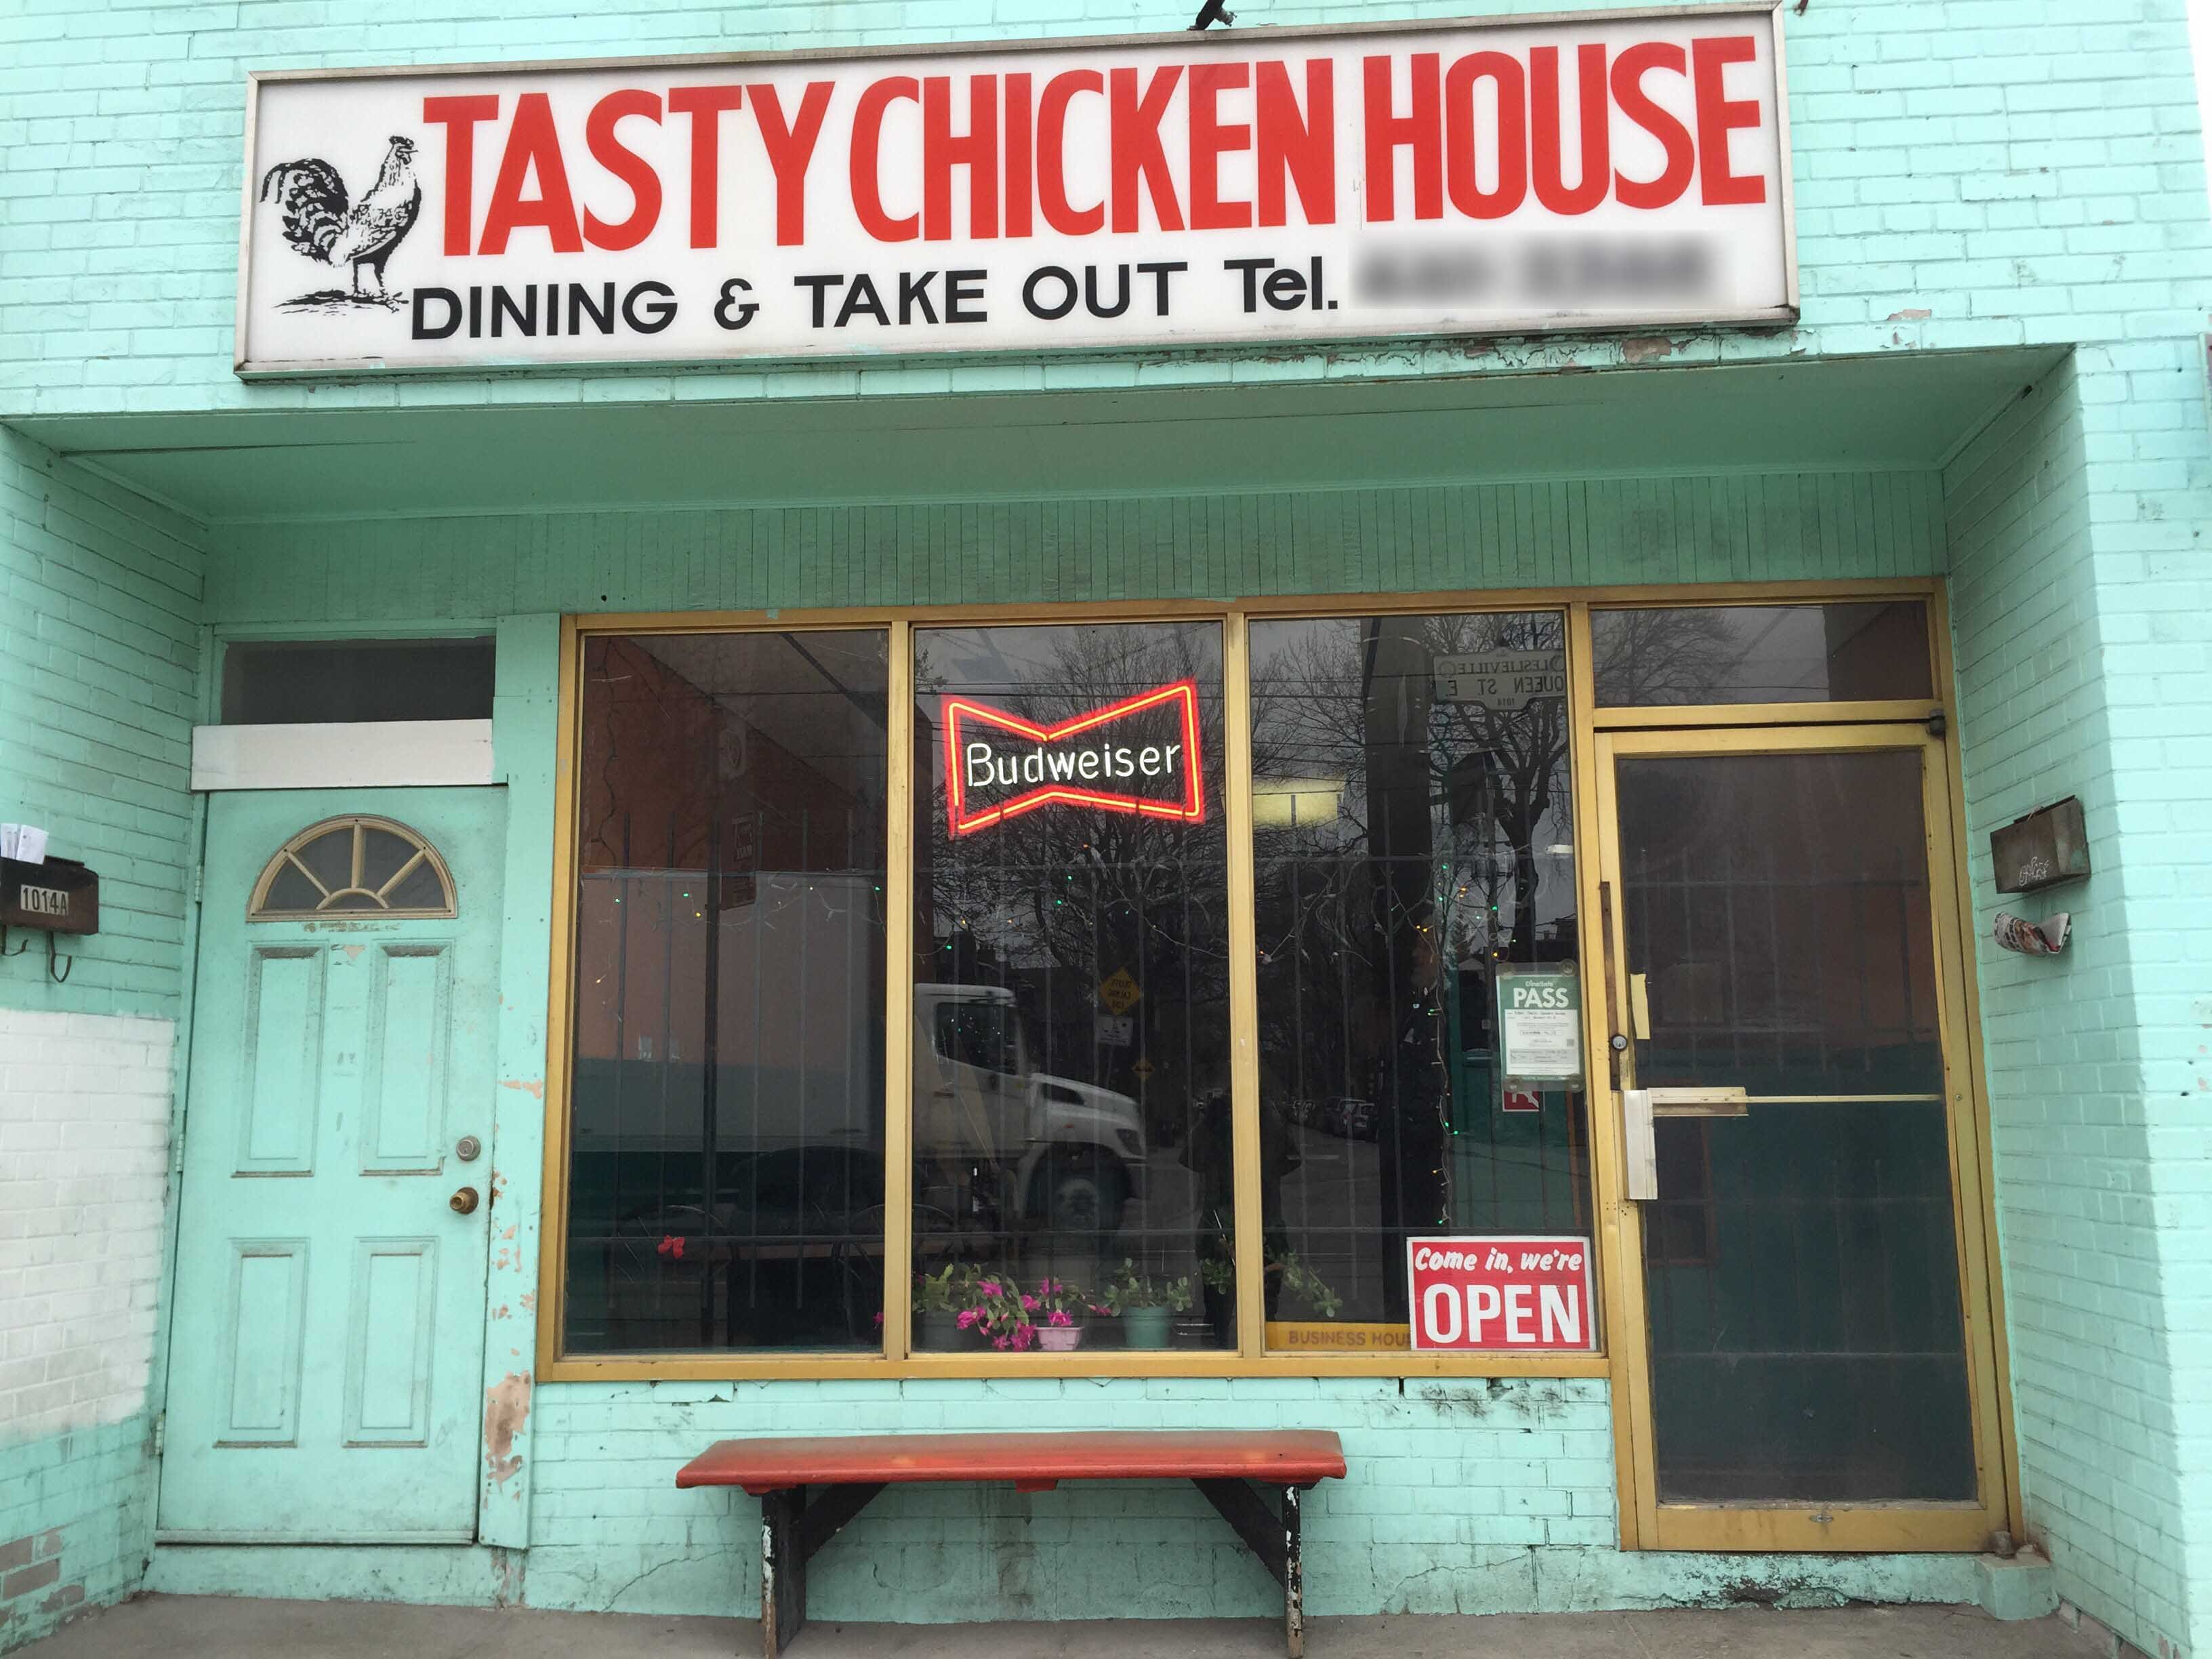 New Tasty Chicken House